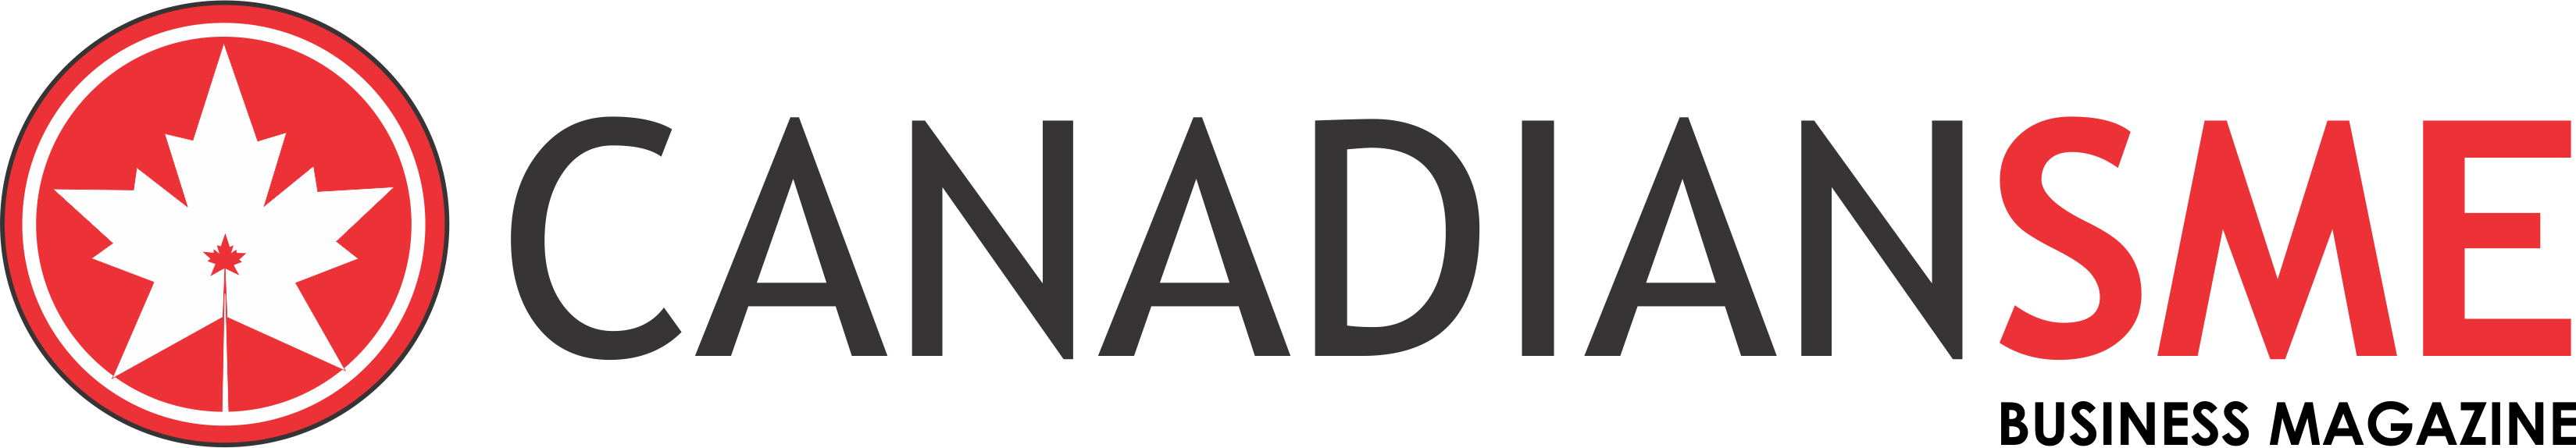 Magazine-dark-logo